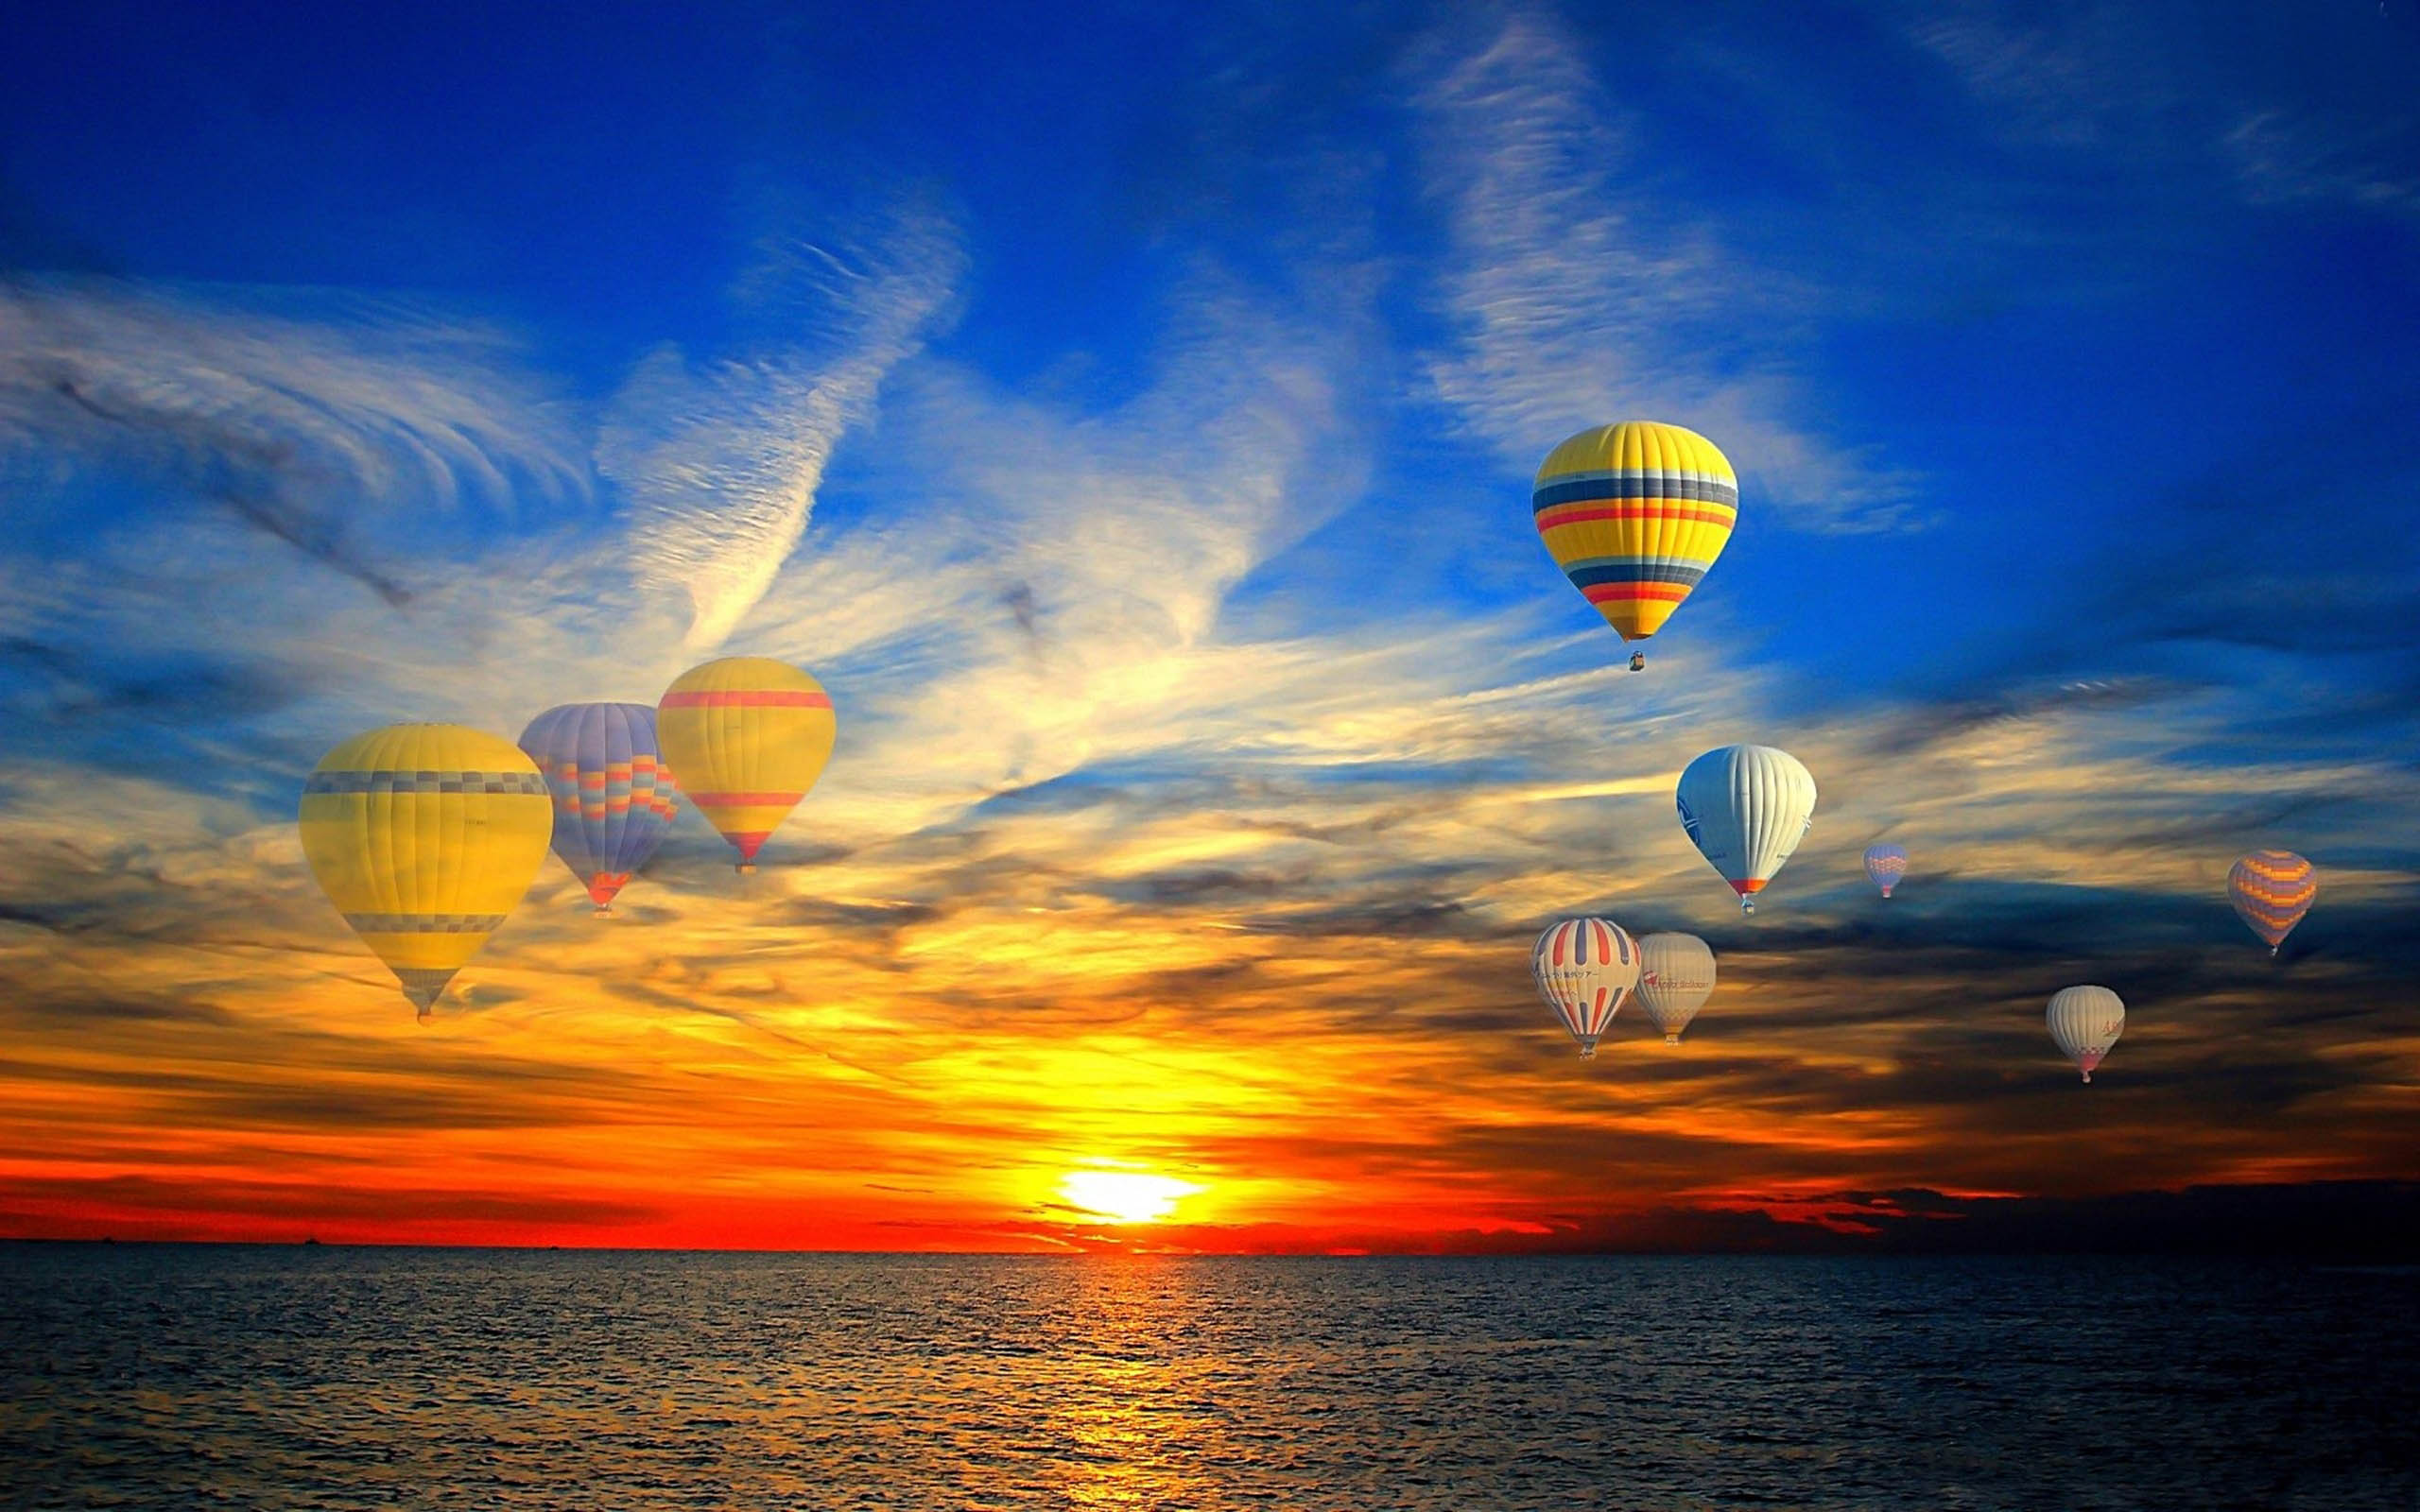 Hãy cùng nhau khám phá thế giới khi bay bằng khinh khí cầu trên biển hoàng hôn với những hình nền HD đẹp nhất. Màn hình của bạn sẽ được phủ đầy bầu trời và biển cả xanh ngắt, giúp cho bạn cảm thấy như đang thực sự bay lượn.